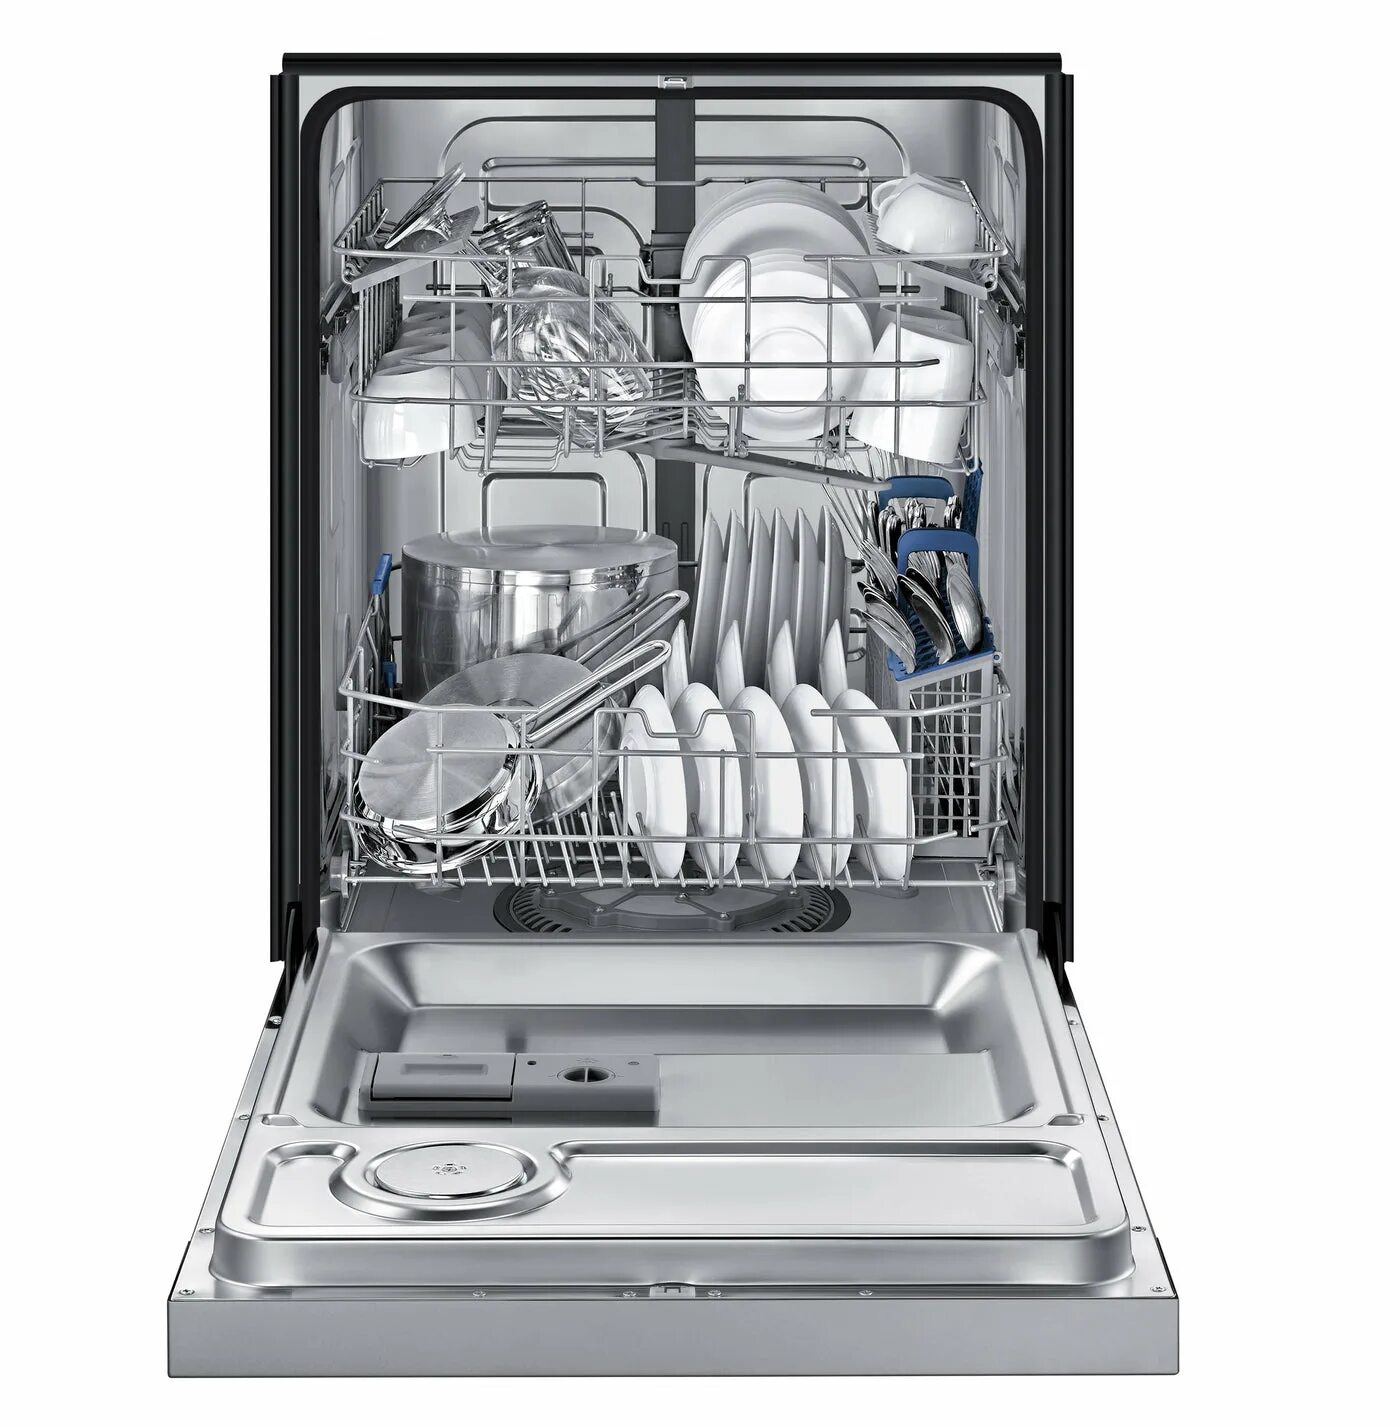 Посудомоечные машины 3 комплекта. Посудомоечная машина Samsung dw50r4040bb. Посудомоечная машина Samsung dw50r4050fs. Посудомоечная машина Platinum dw139e. Посудомоечная машина Avalon-dw32t инокс.